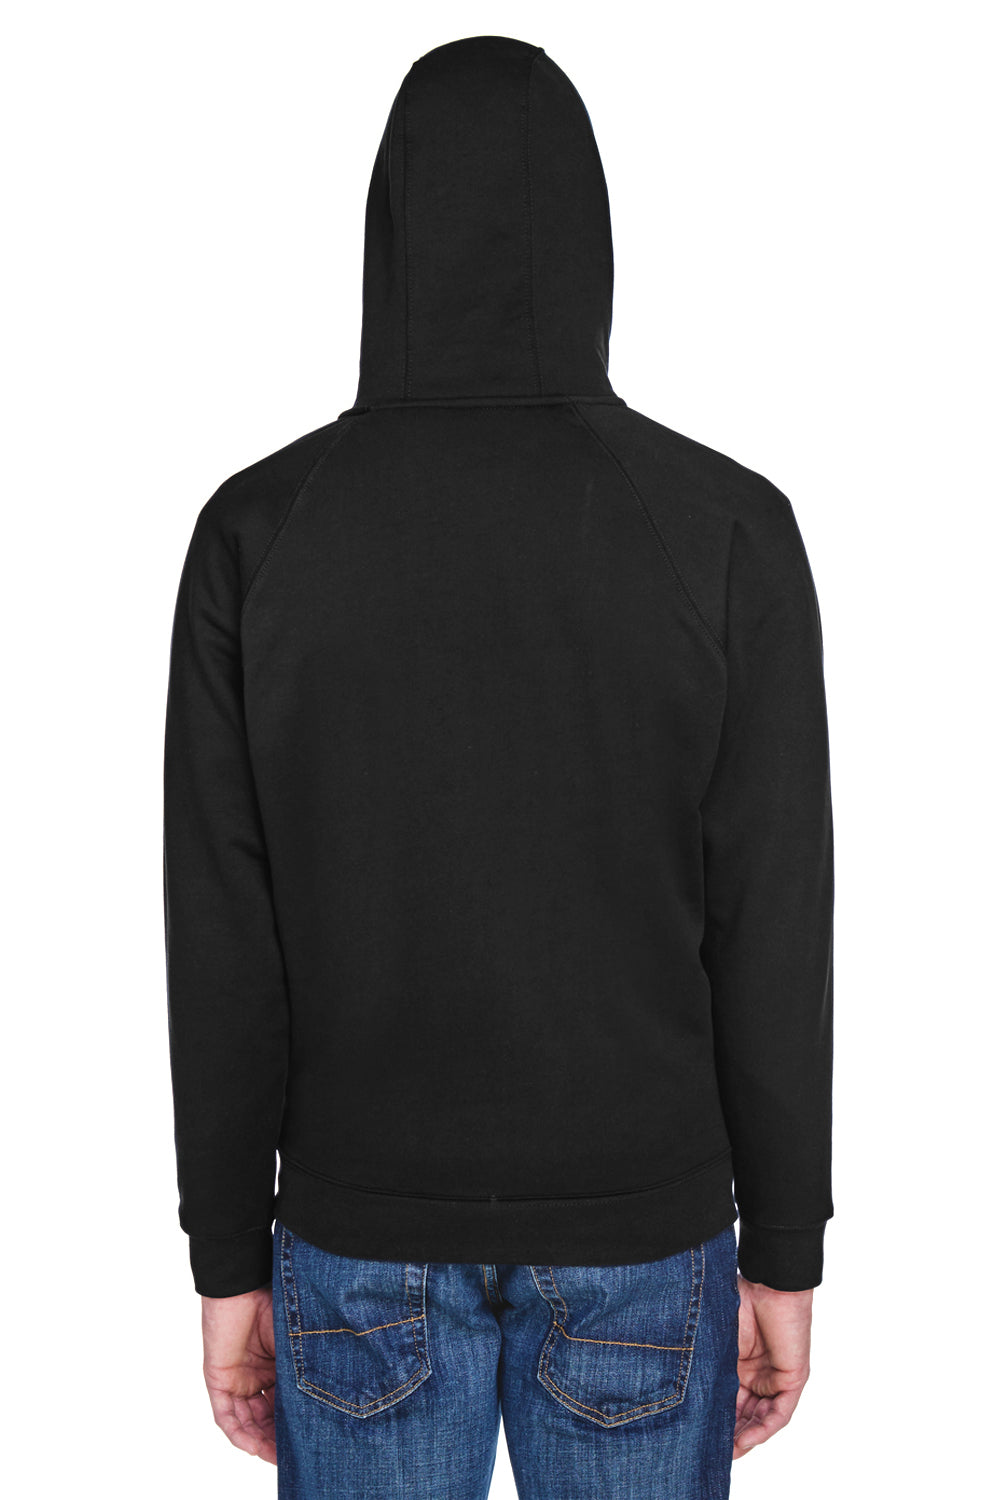 UltraClub 8463 Mens Rugged Wear Water Resistant Fleece Full Zip Hooded Sweatshirt Hoodie Black Back